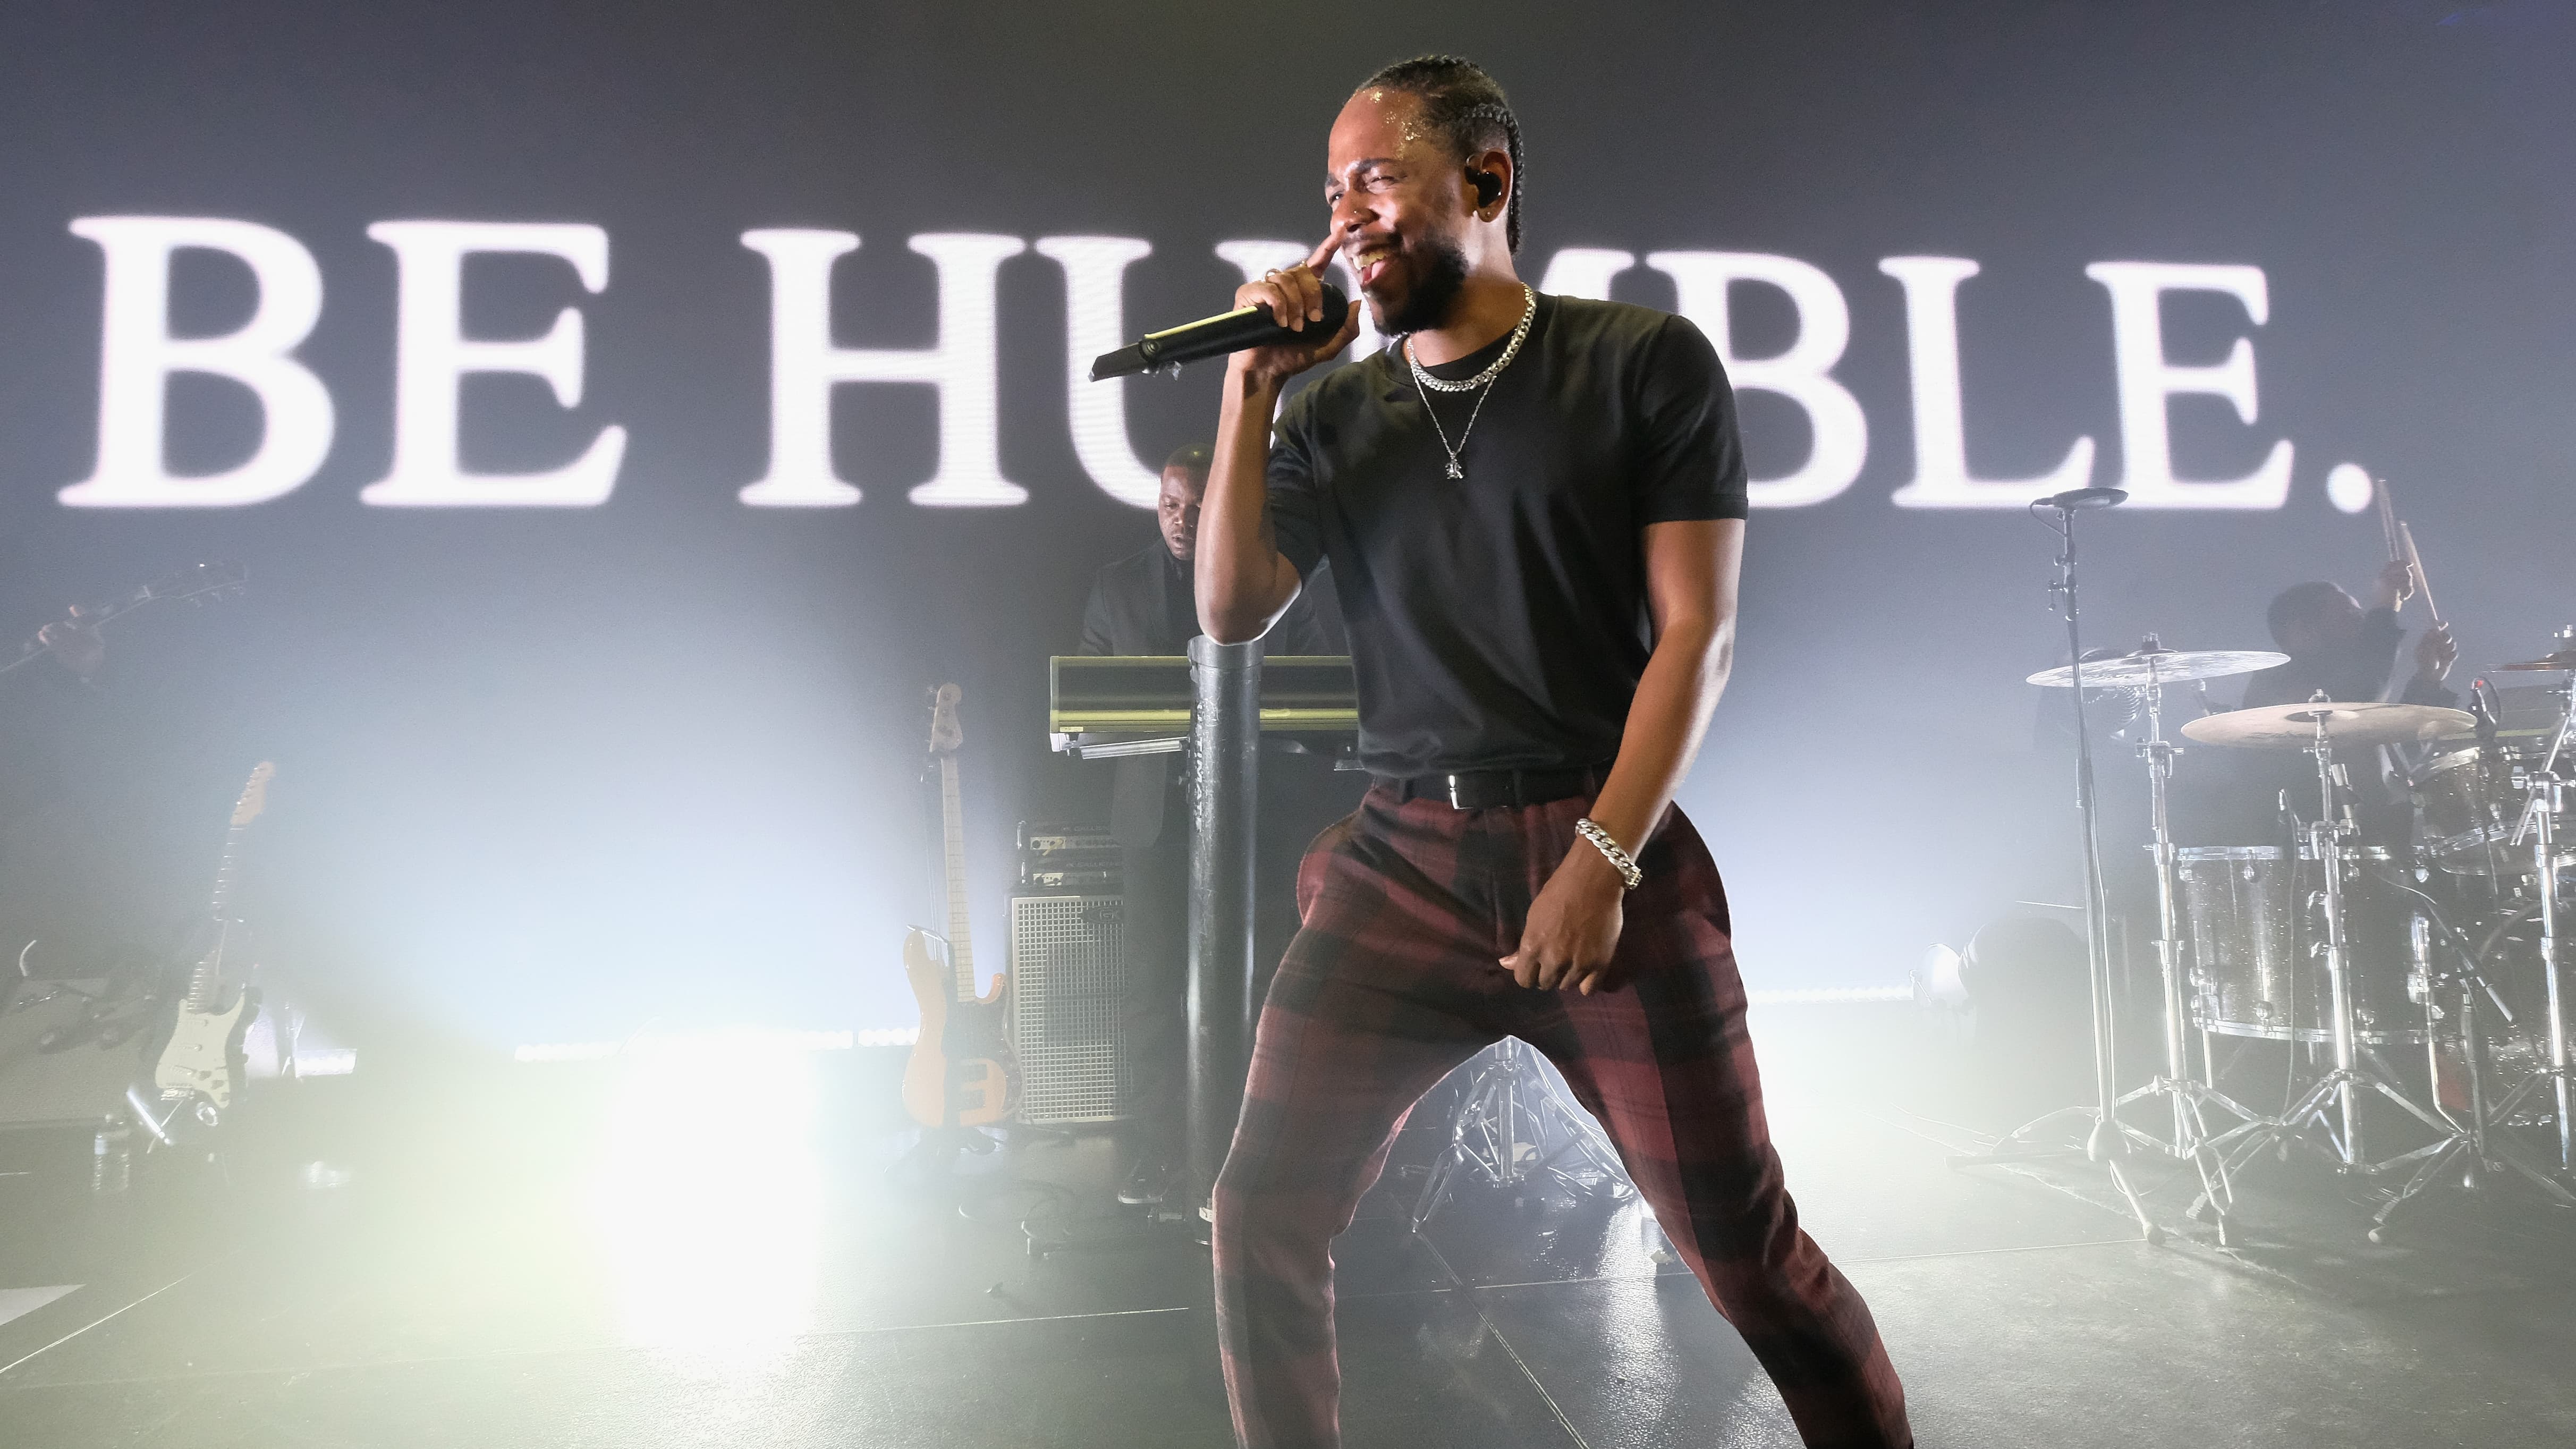 Le Monde s'en prend à Kendrick Lamar suite à son concert à Paris